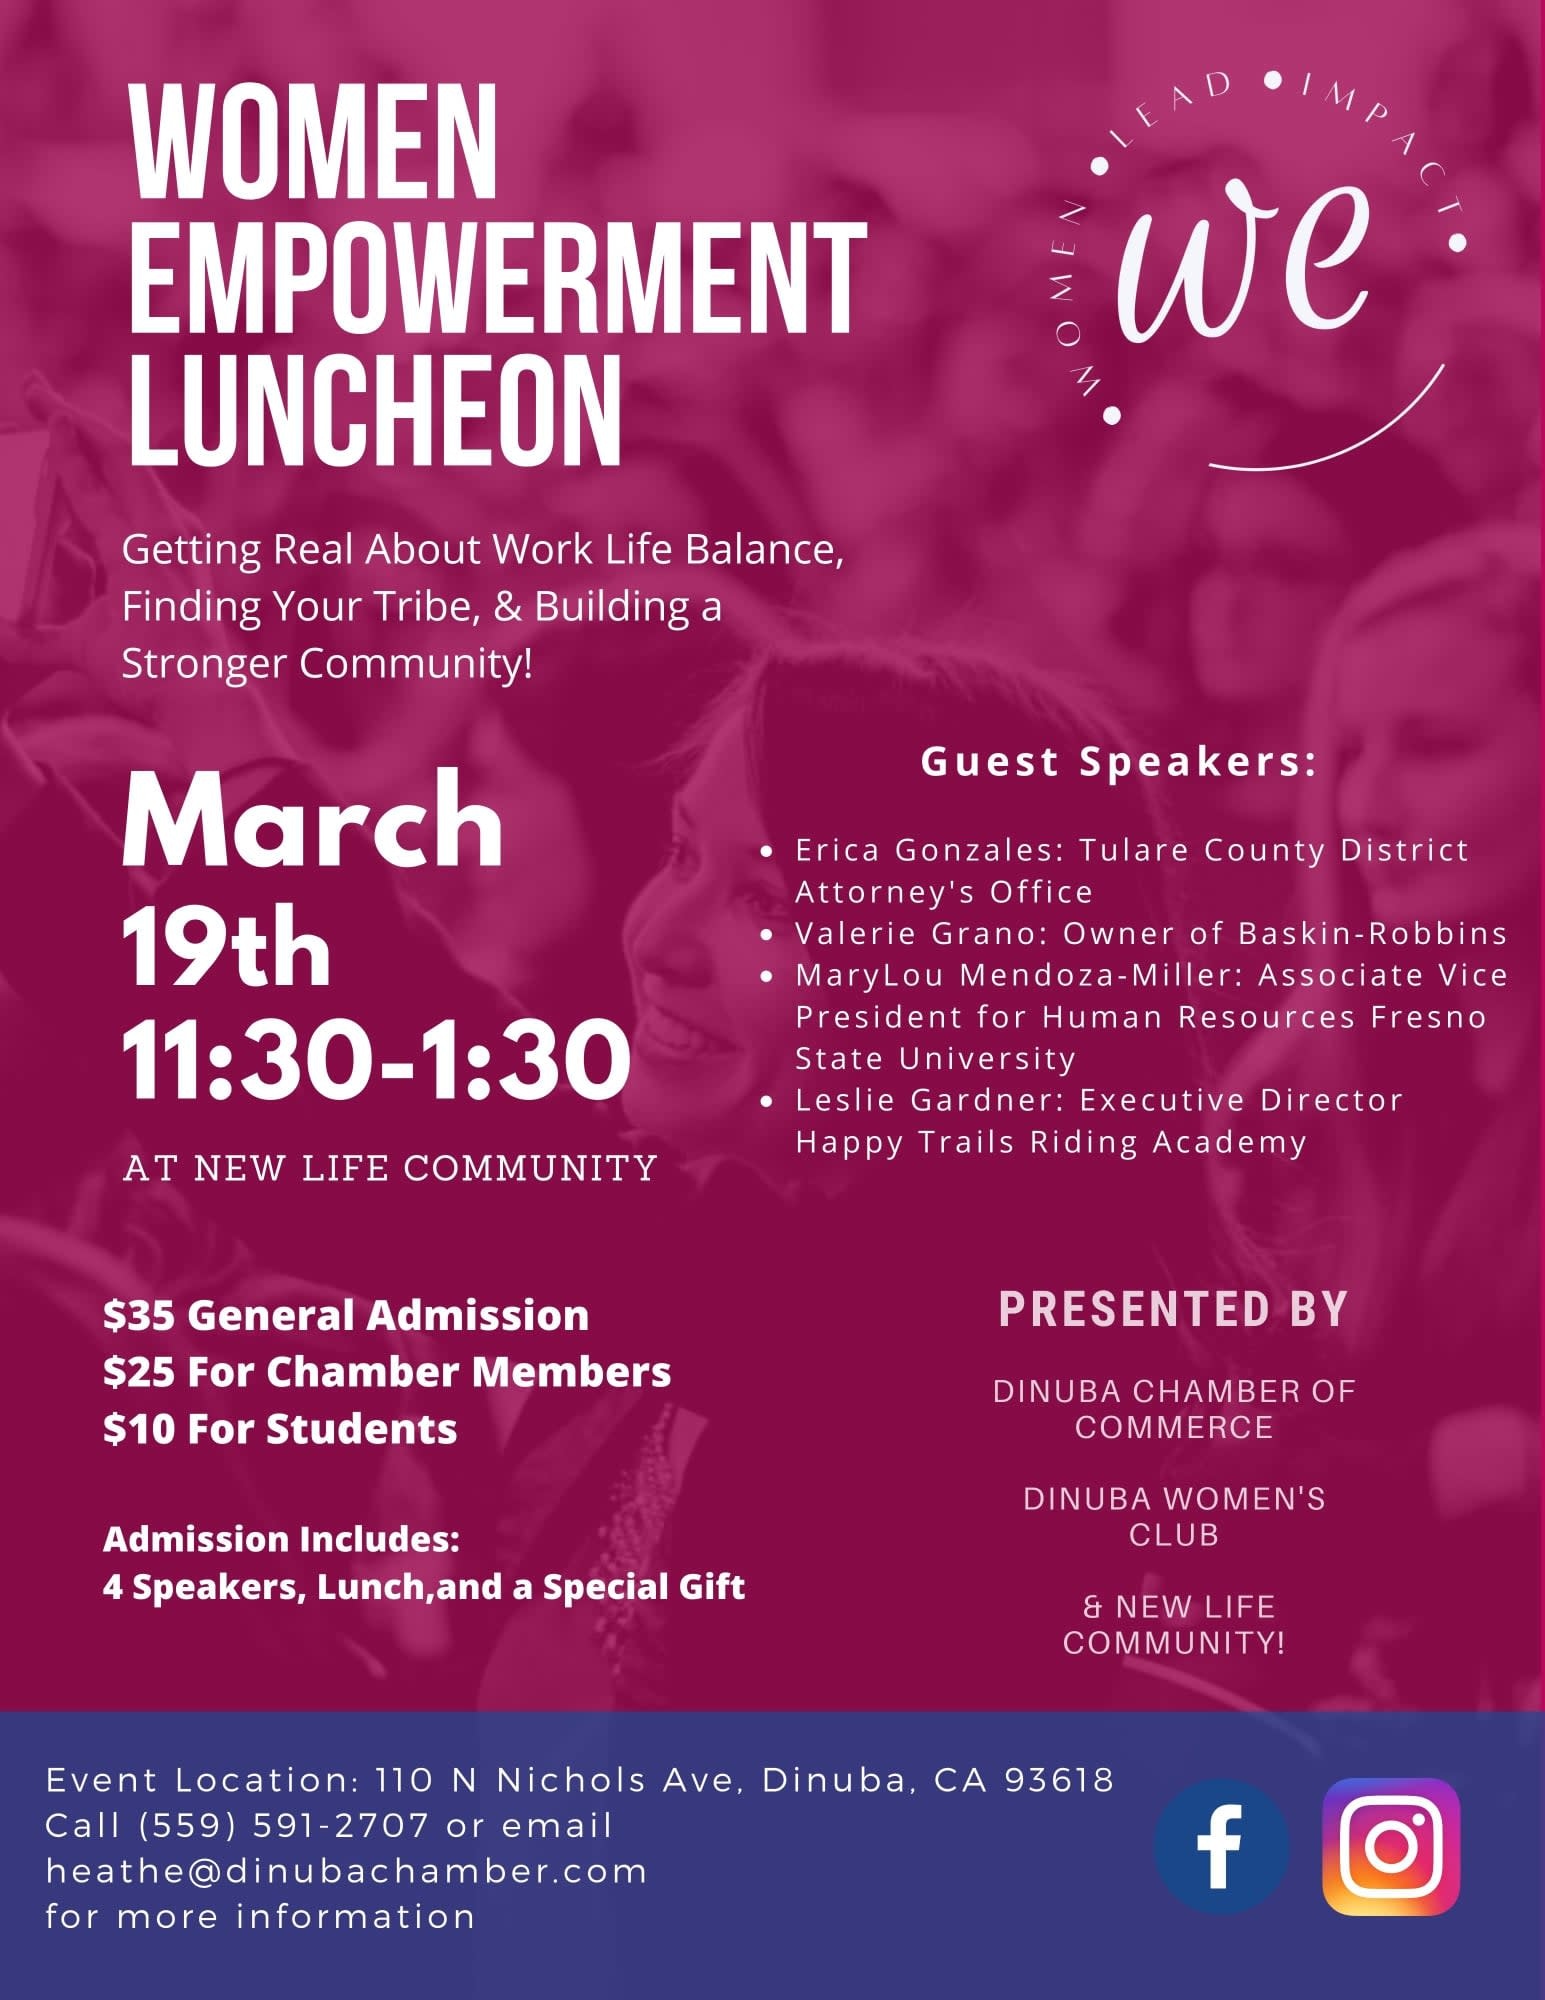 Women Empowerment Luncheon - Dinuba Chamber of Commerce